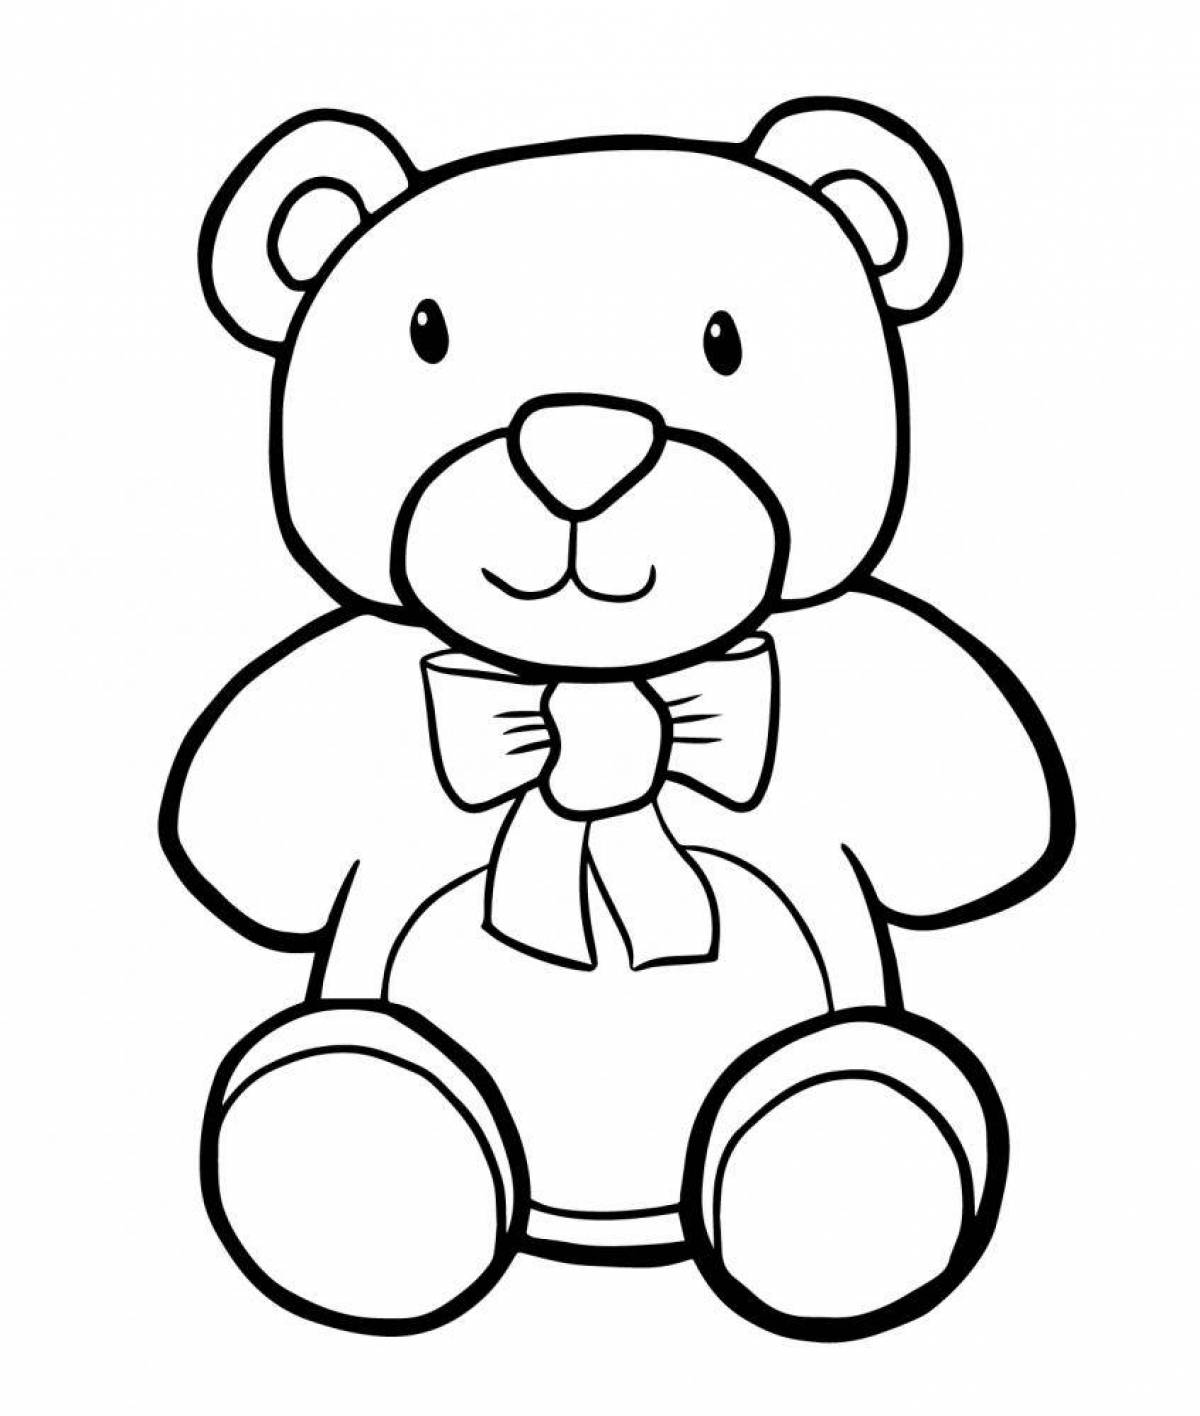 Милый медвежонок-раскраска для детей